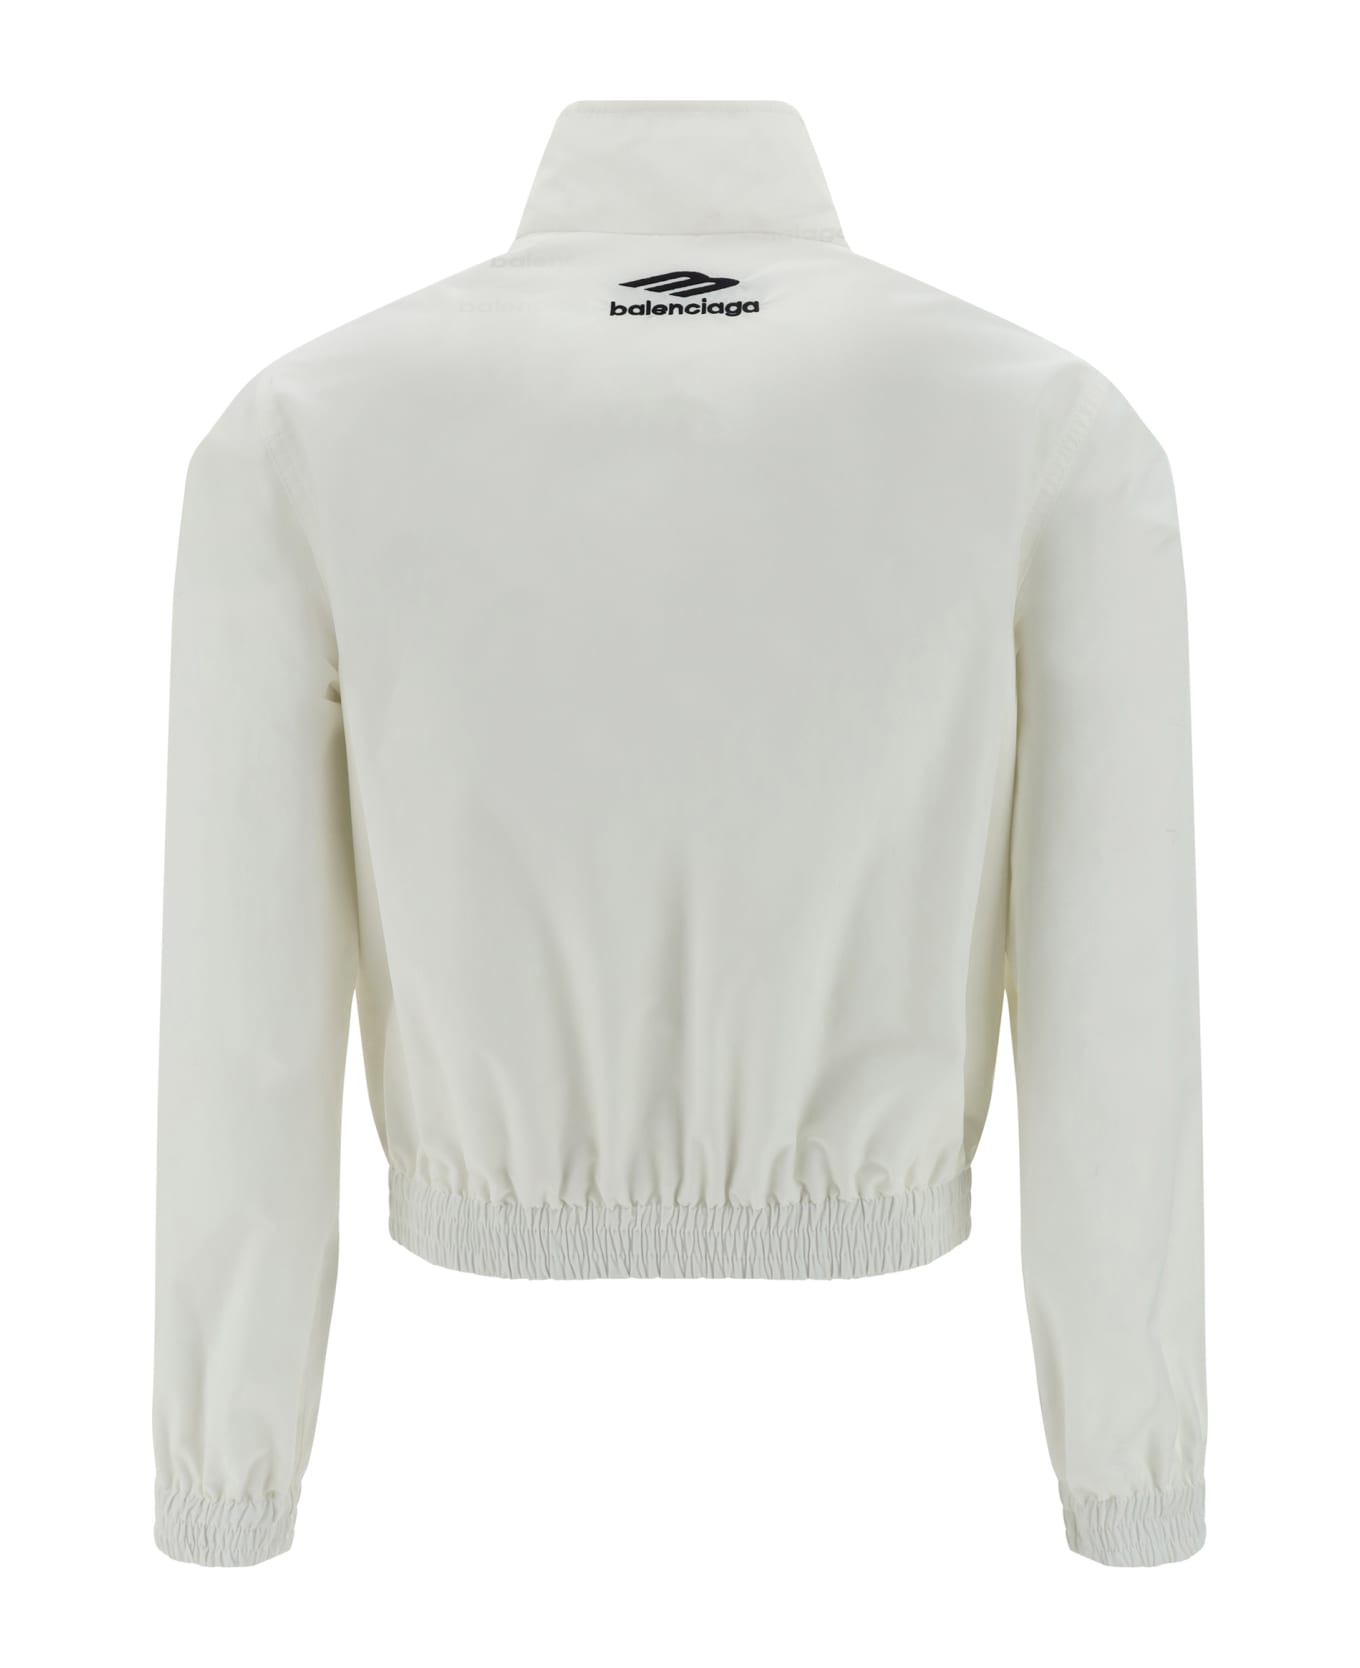 Balenciaga Jacket - White